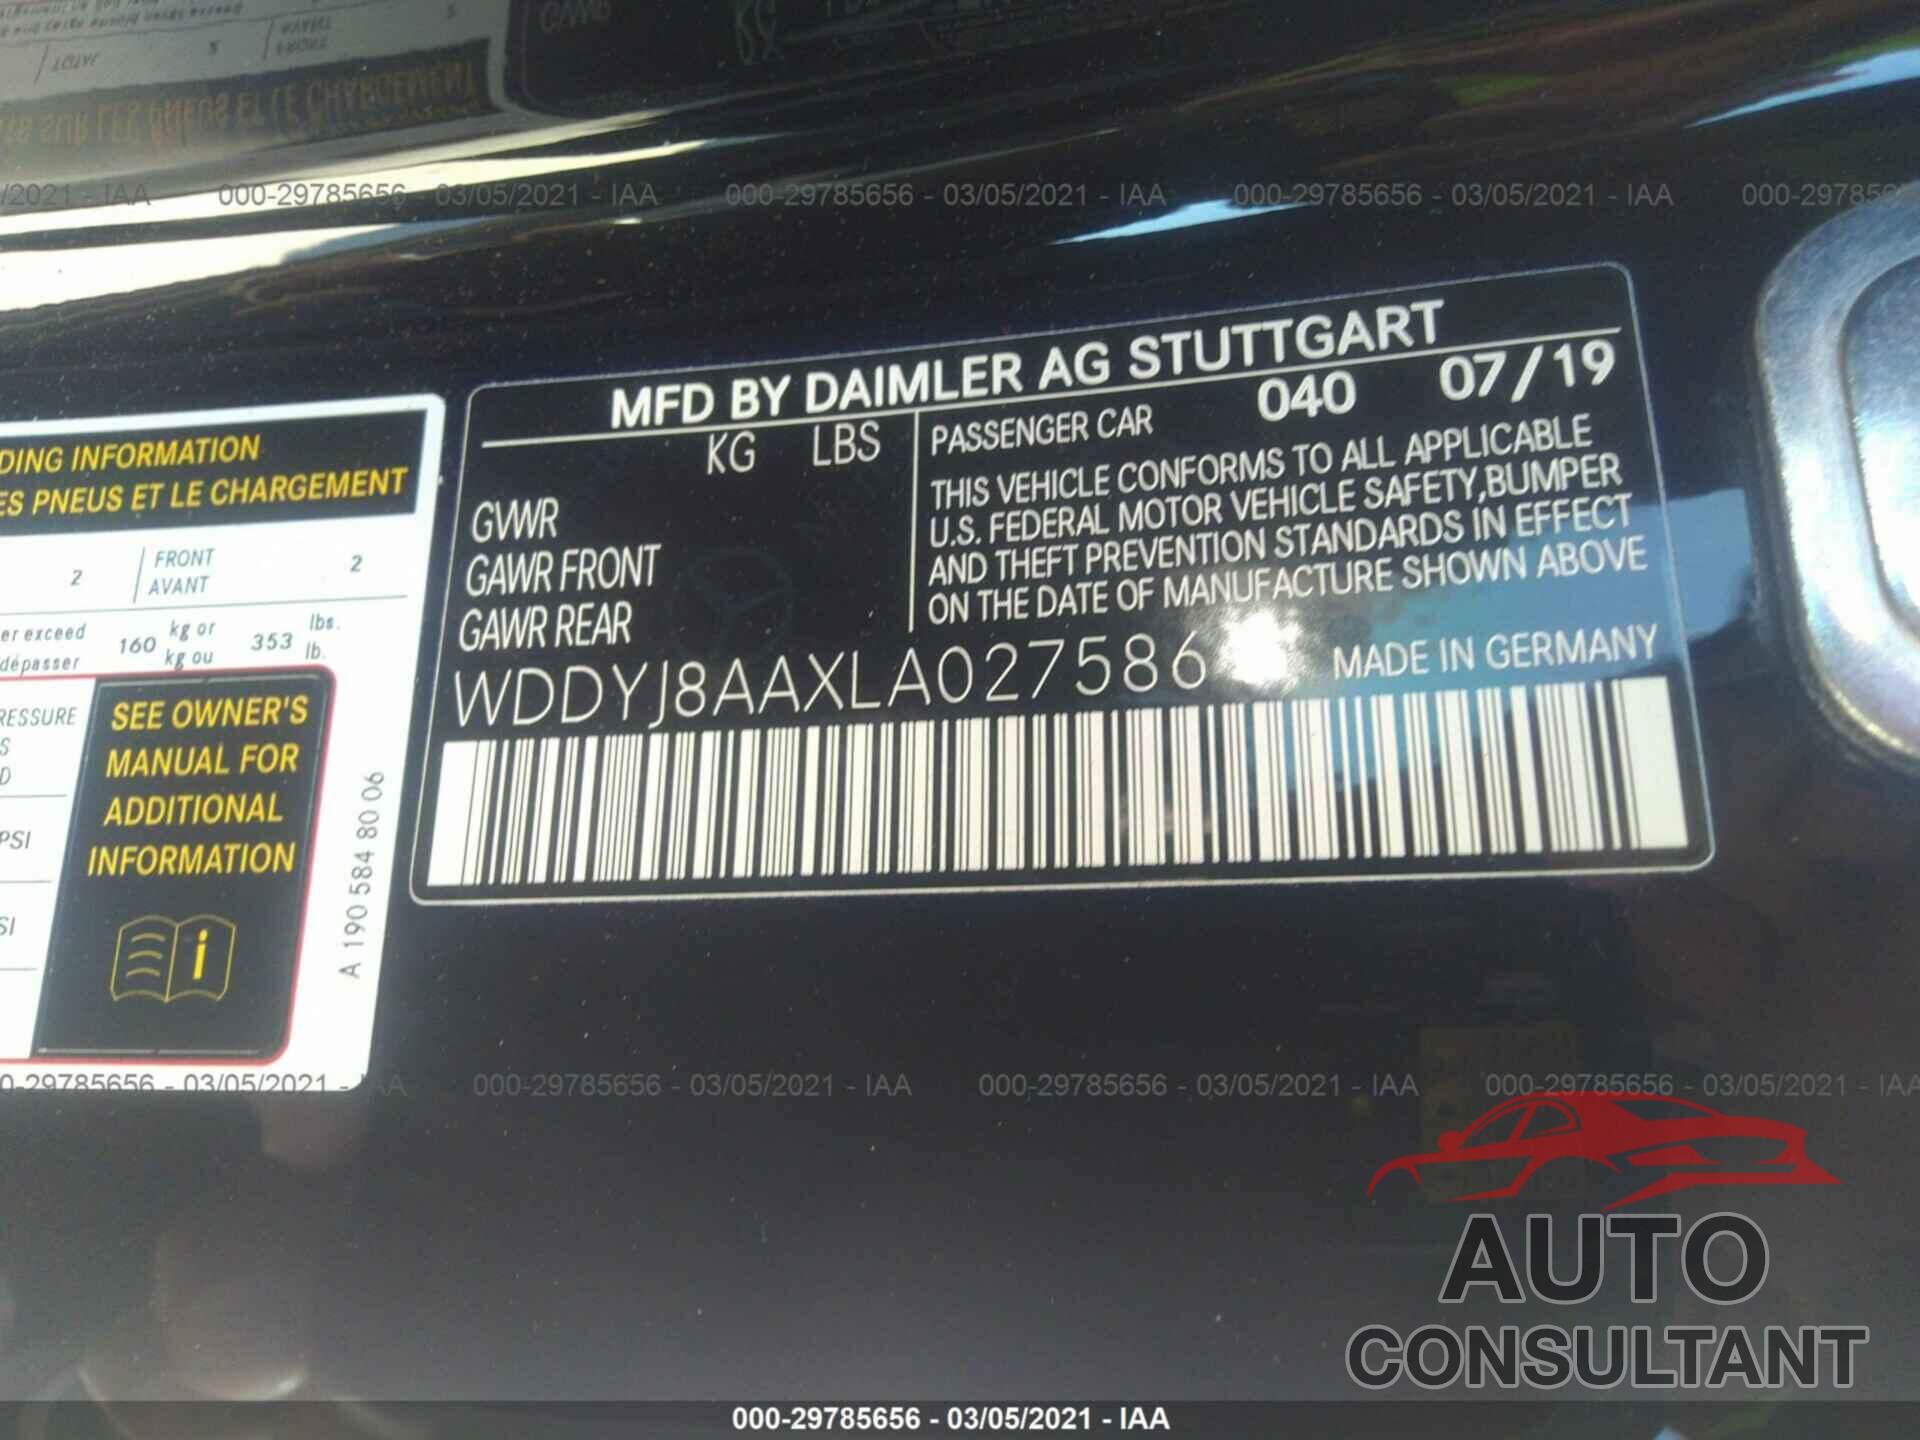 MERCEDES-BENZ AMG GT 2020 - WDDYJ8AAXLA027586